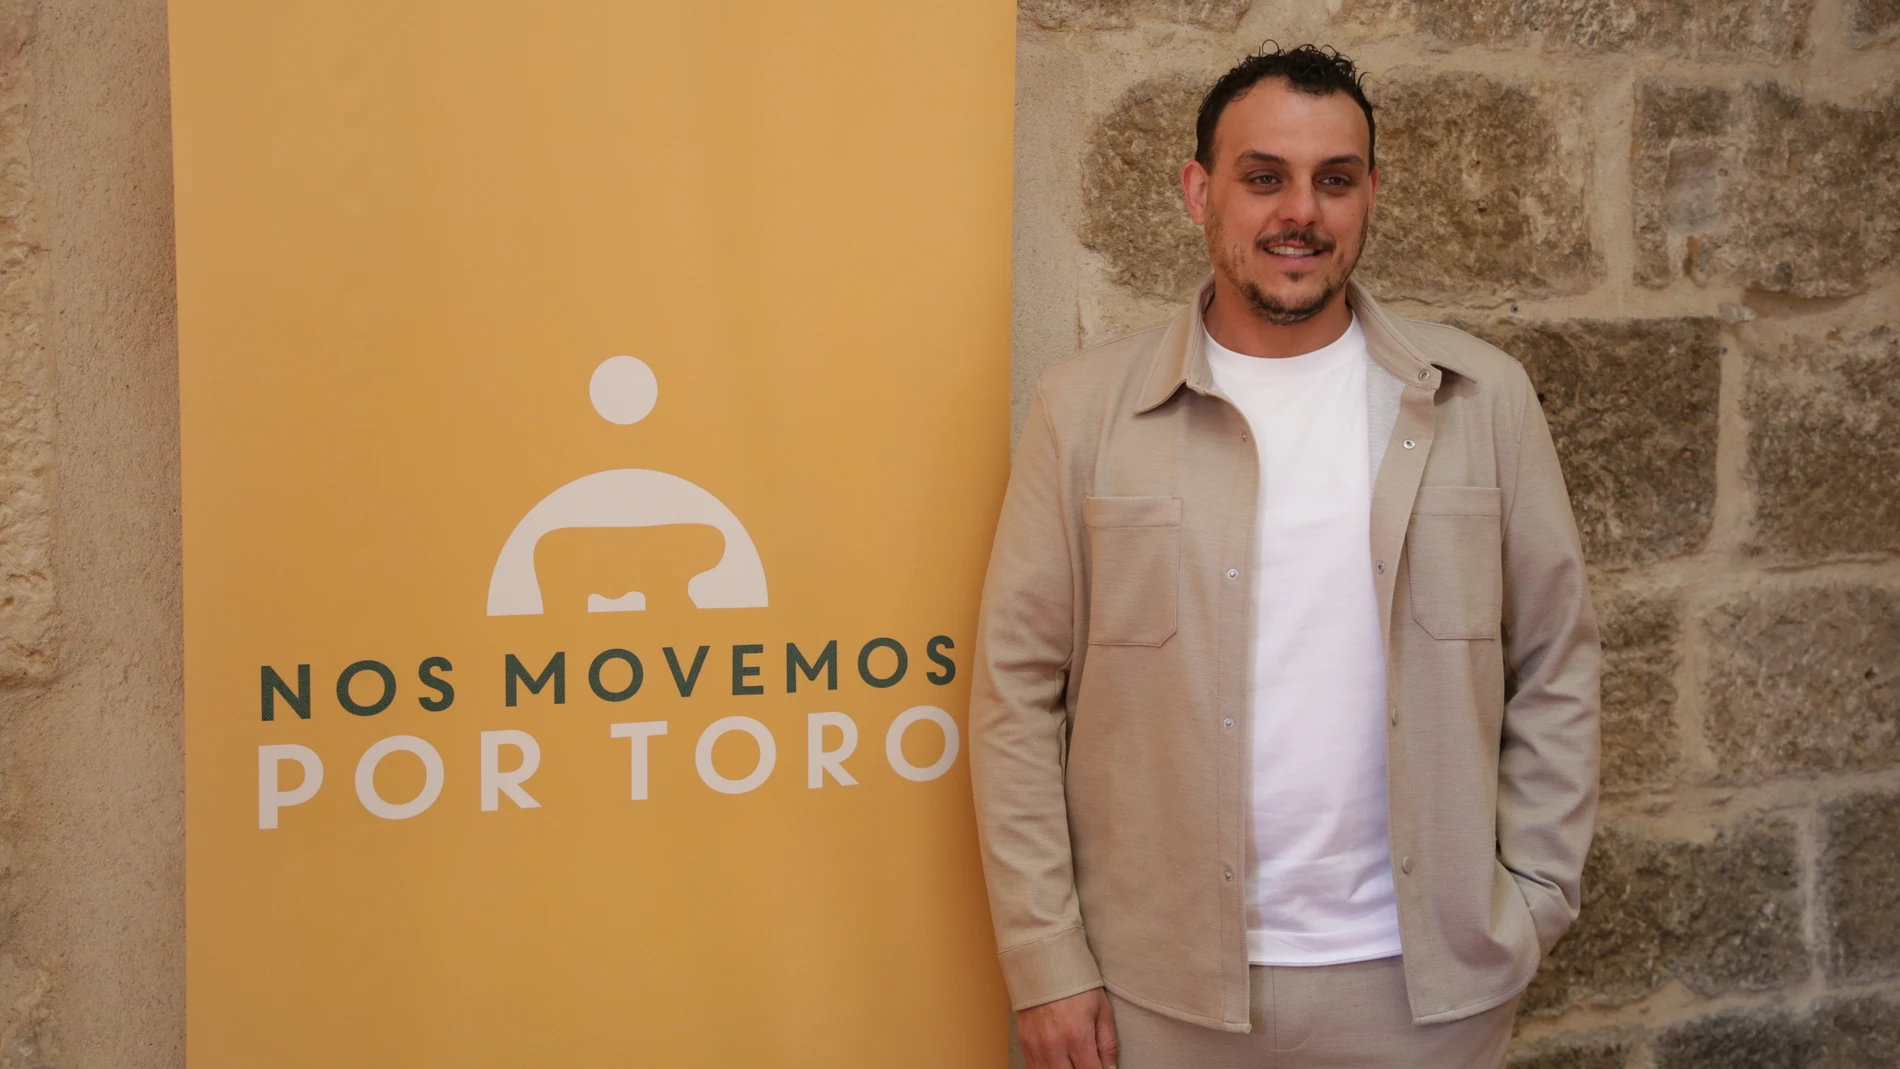 El actual alcalde de Toro (Zamora), Tomás del Bien, anuncia que se presenta a las Elecciones Municipales del 28 de mayo con ‘Nos movemos por Toro’